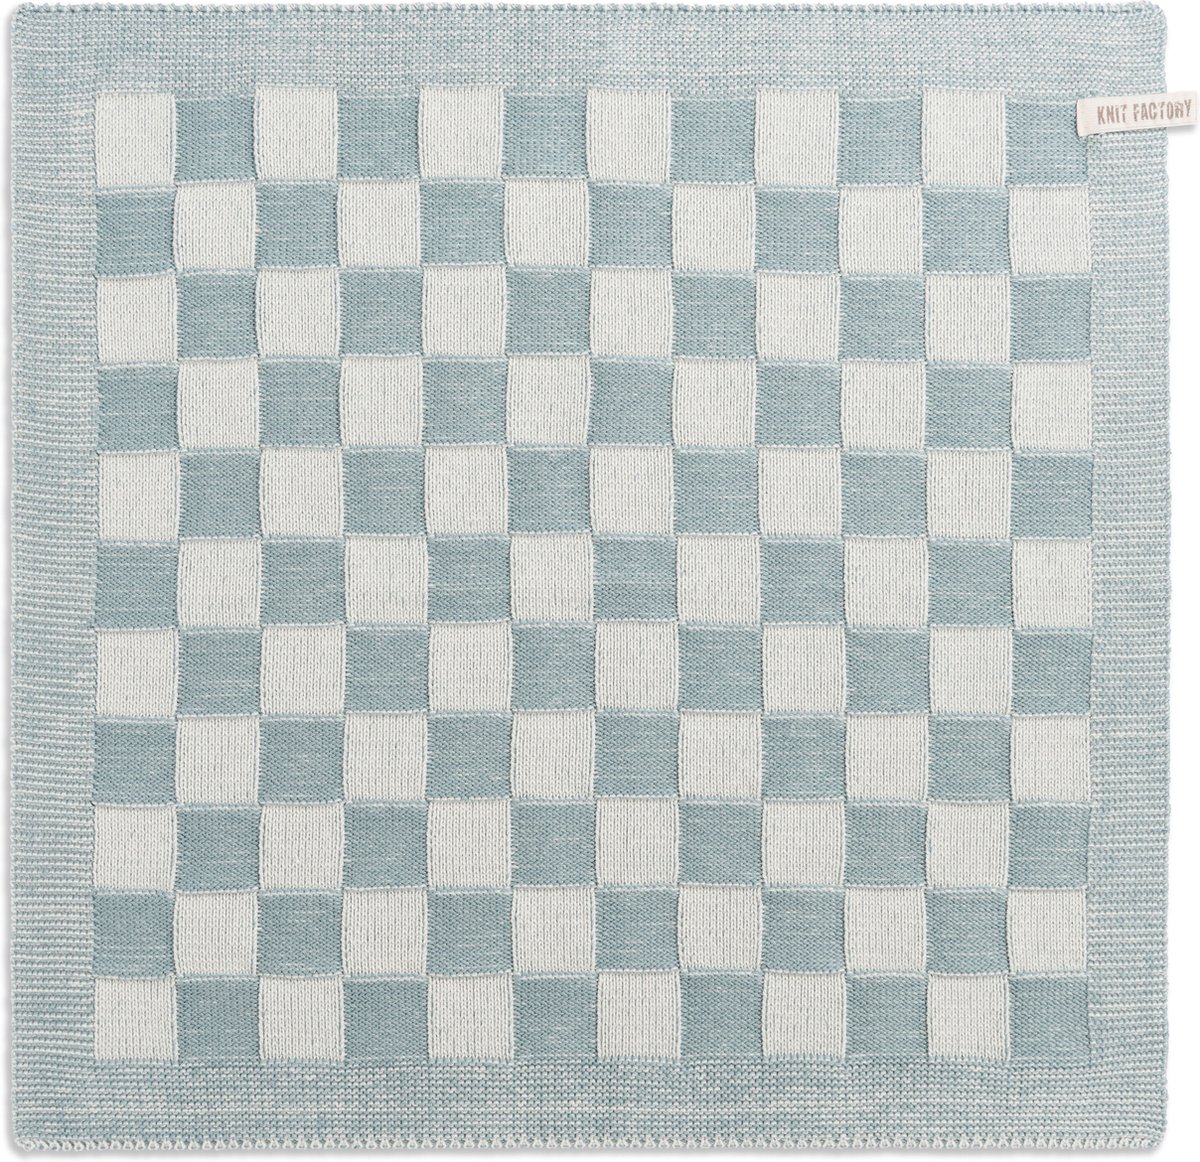 Knit Factory Gebreide Keukendoek - Keukenhanddoek Block - Geblokt motief - Handdoek - Vaatdoek - Keuken doek - Ecru/Stone Green - Traditionele look - 50x50 cm